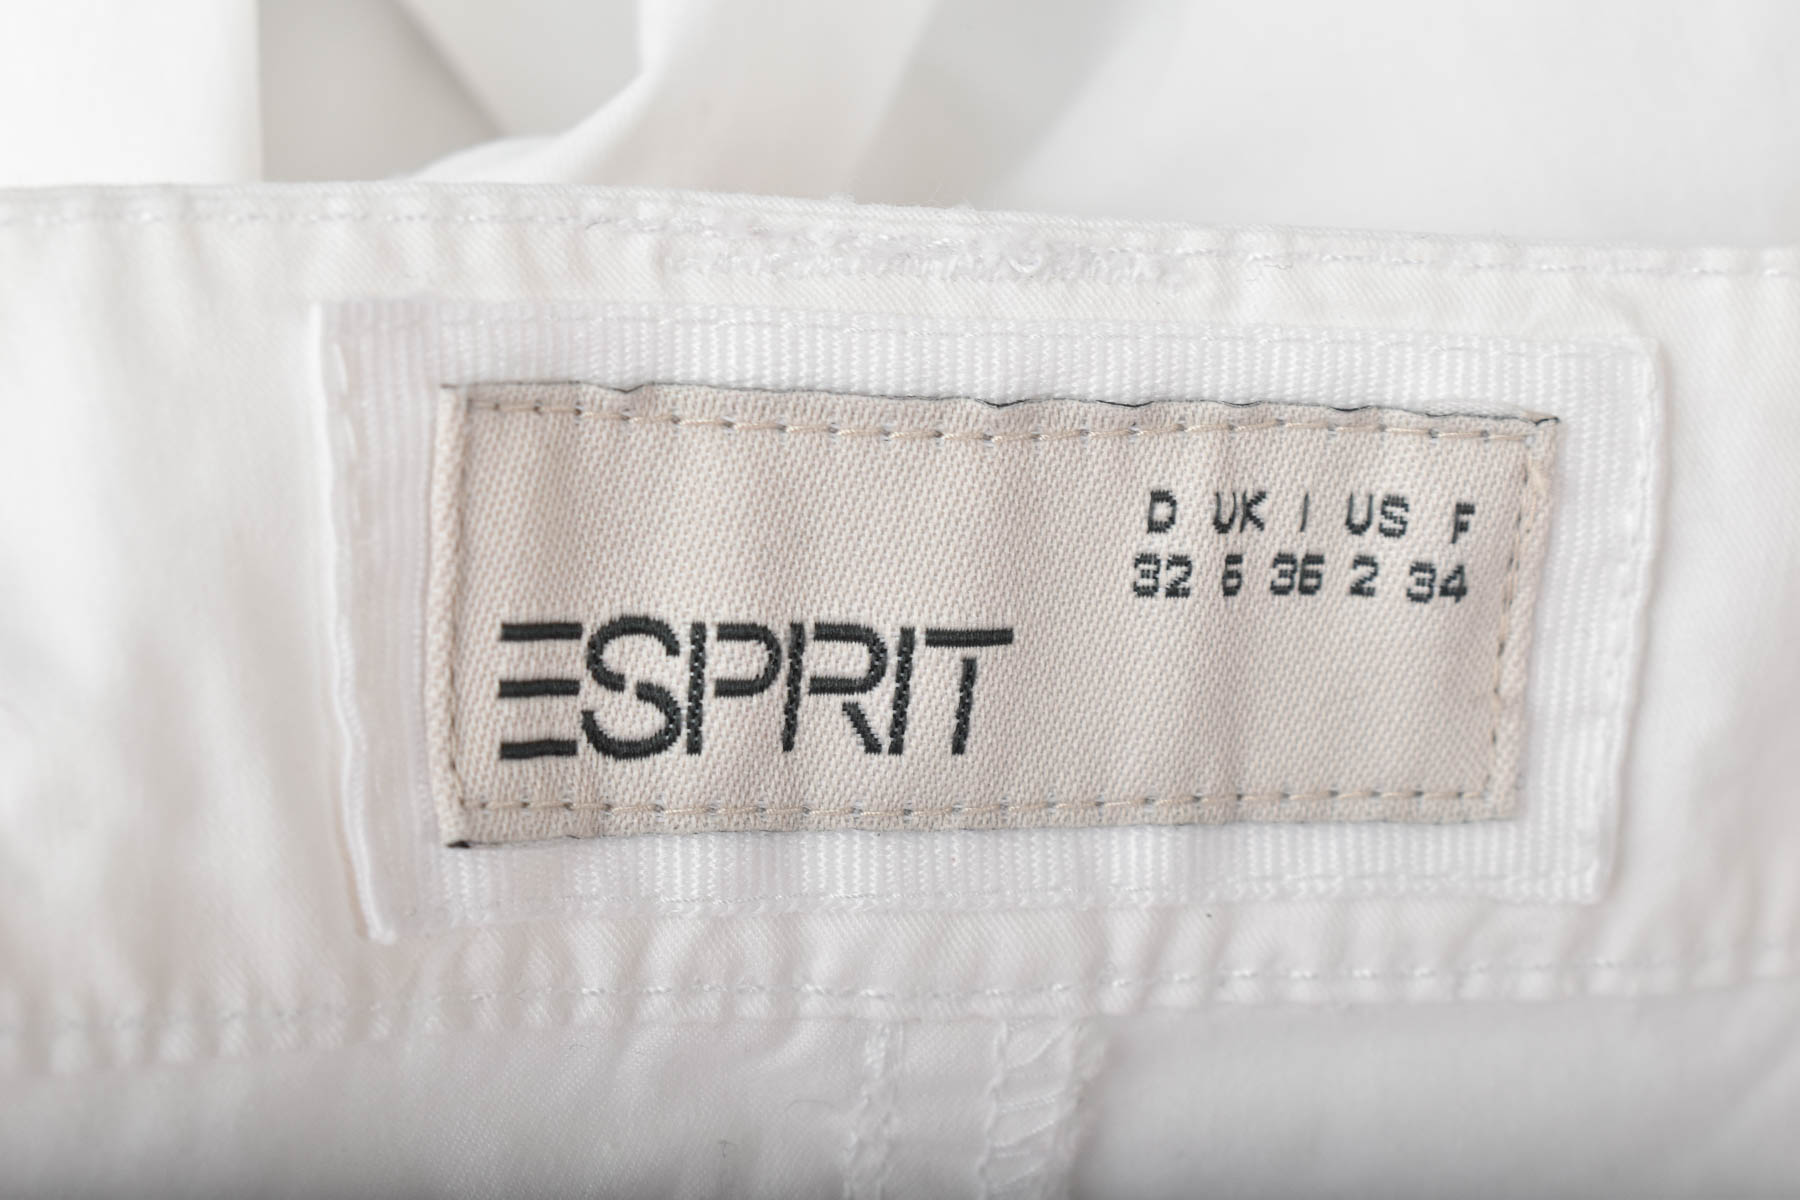 Female shorts - ESPRIT - 2